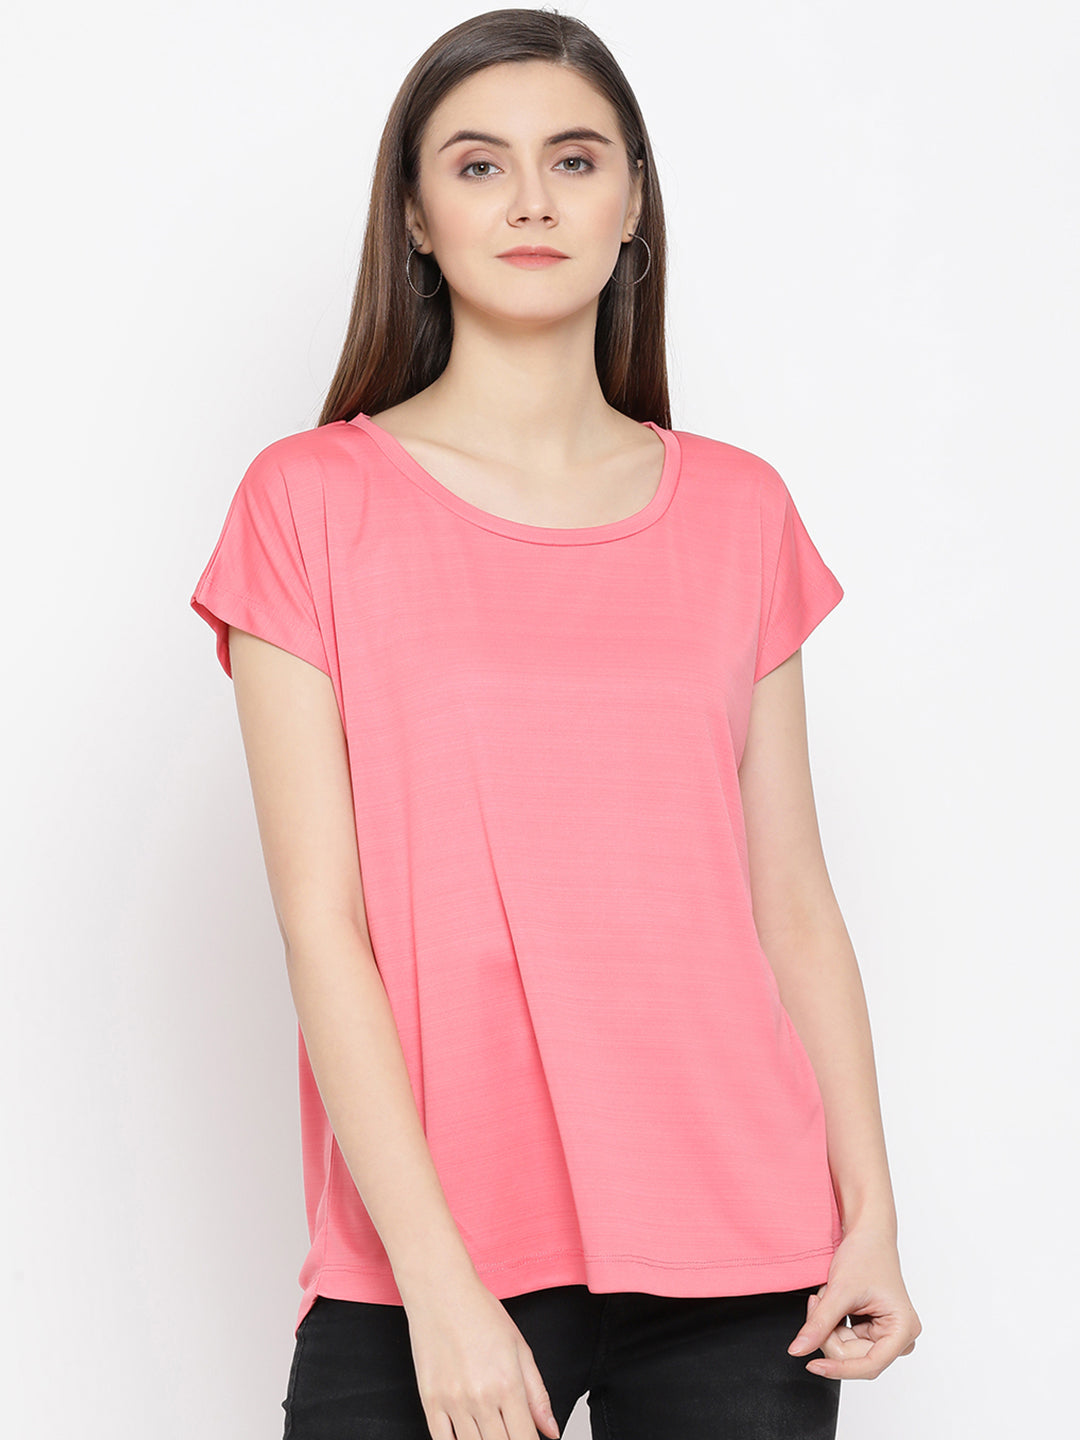 Pink T-Shirt - Women T-Shirts